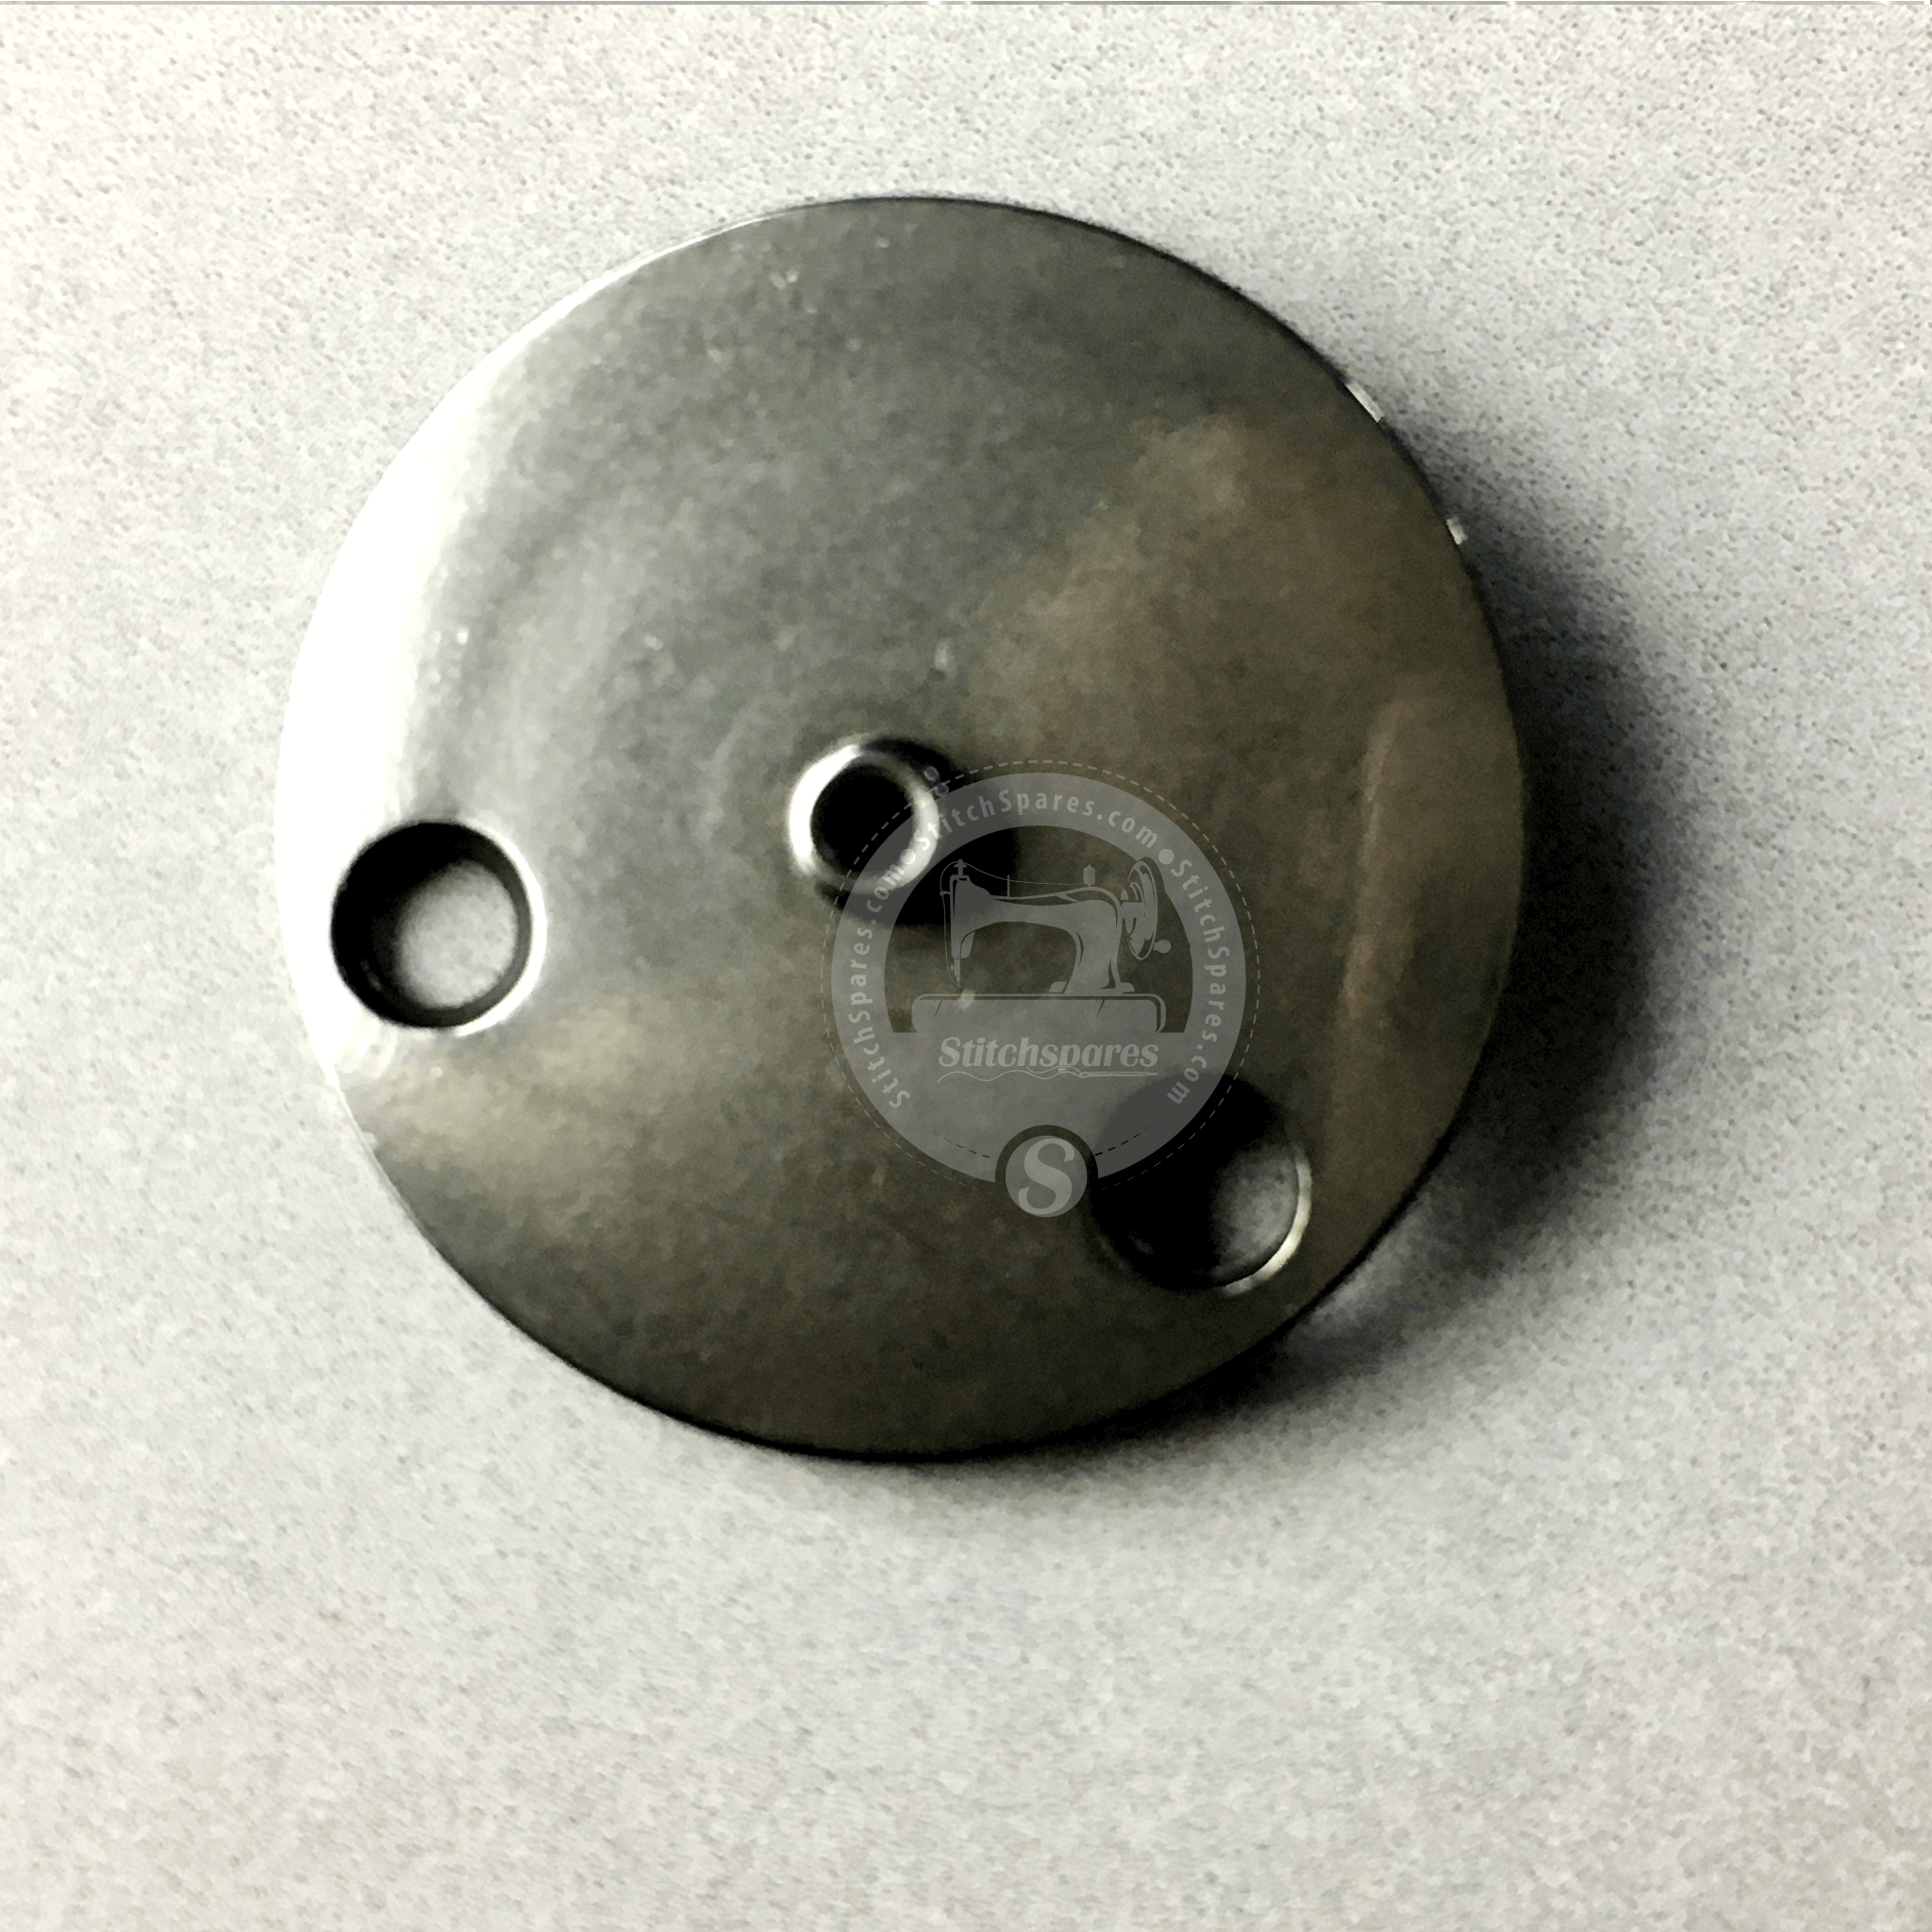 MAZ15801000 #1.6 MM placa de aguja guía de orificio Juki Lk-1900 pieza de repuesto para máquina de coser